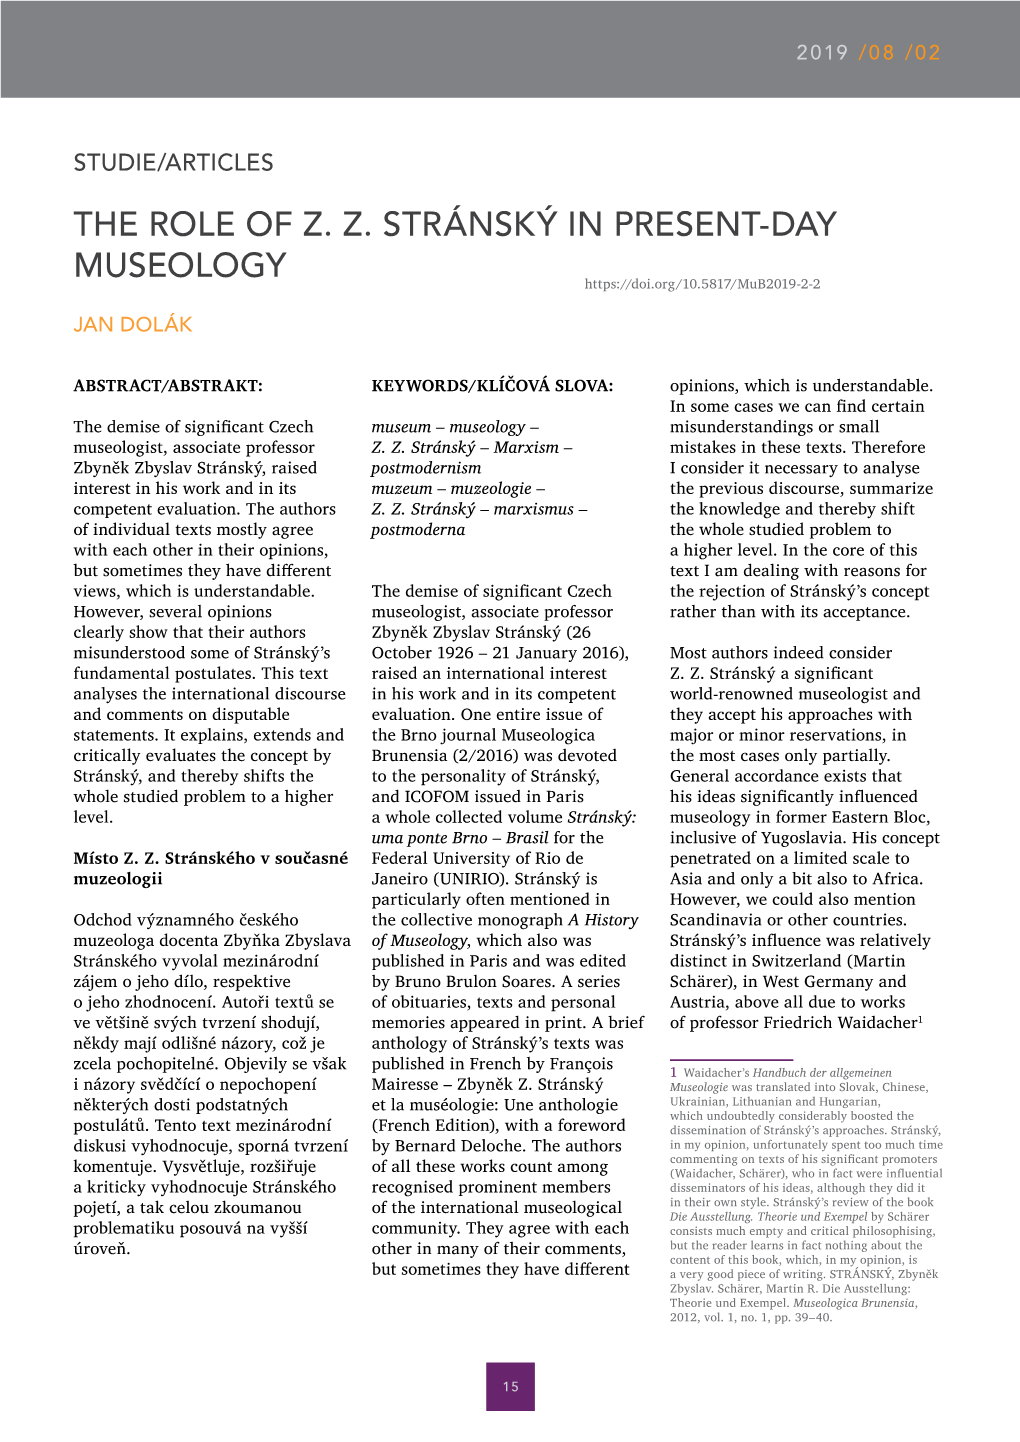 The Role of Z. Z. Stránský in Present-Day Museology